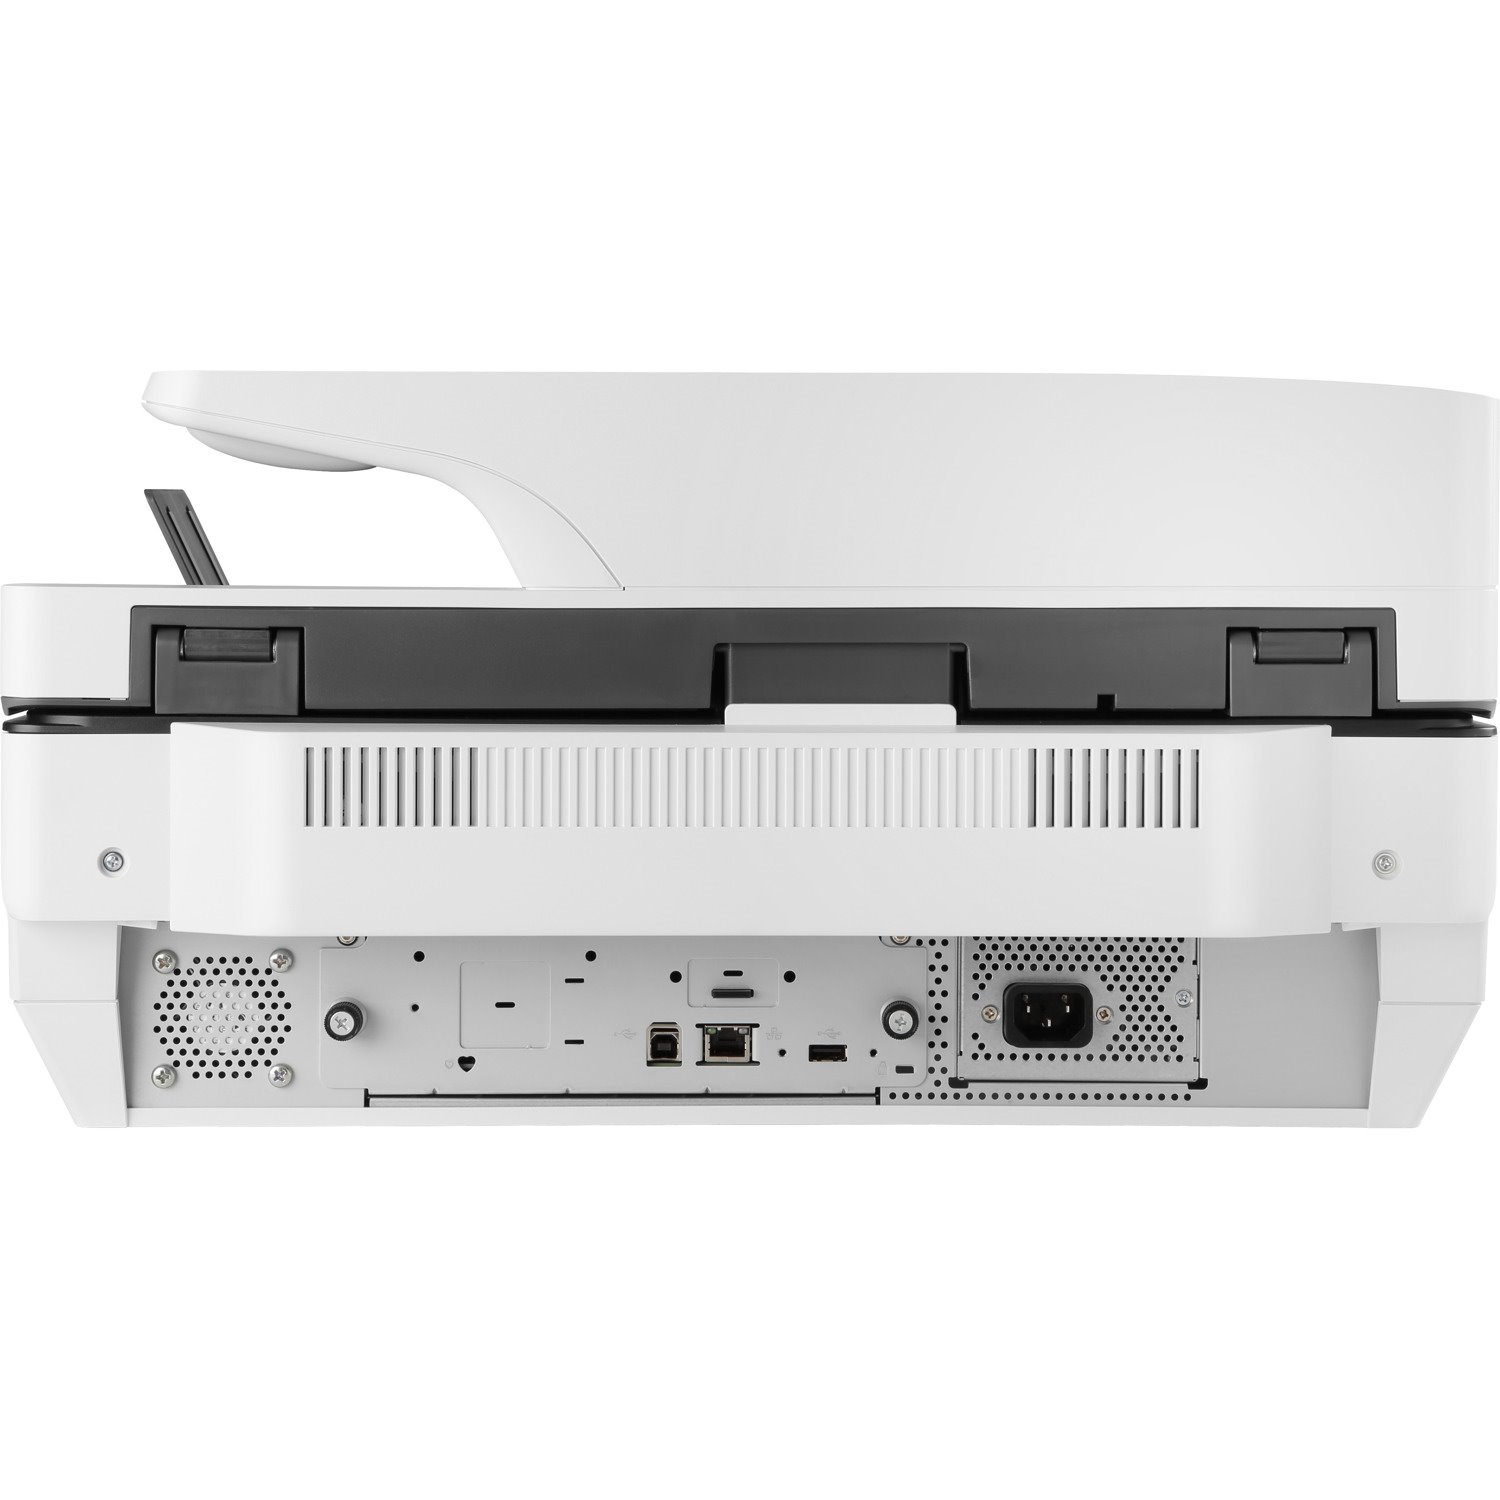 HP Digital Sender 8500fn2 Sheetfed Scanner - 600 dpi Optical